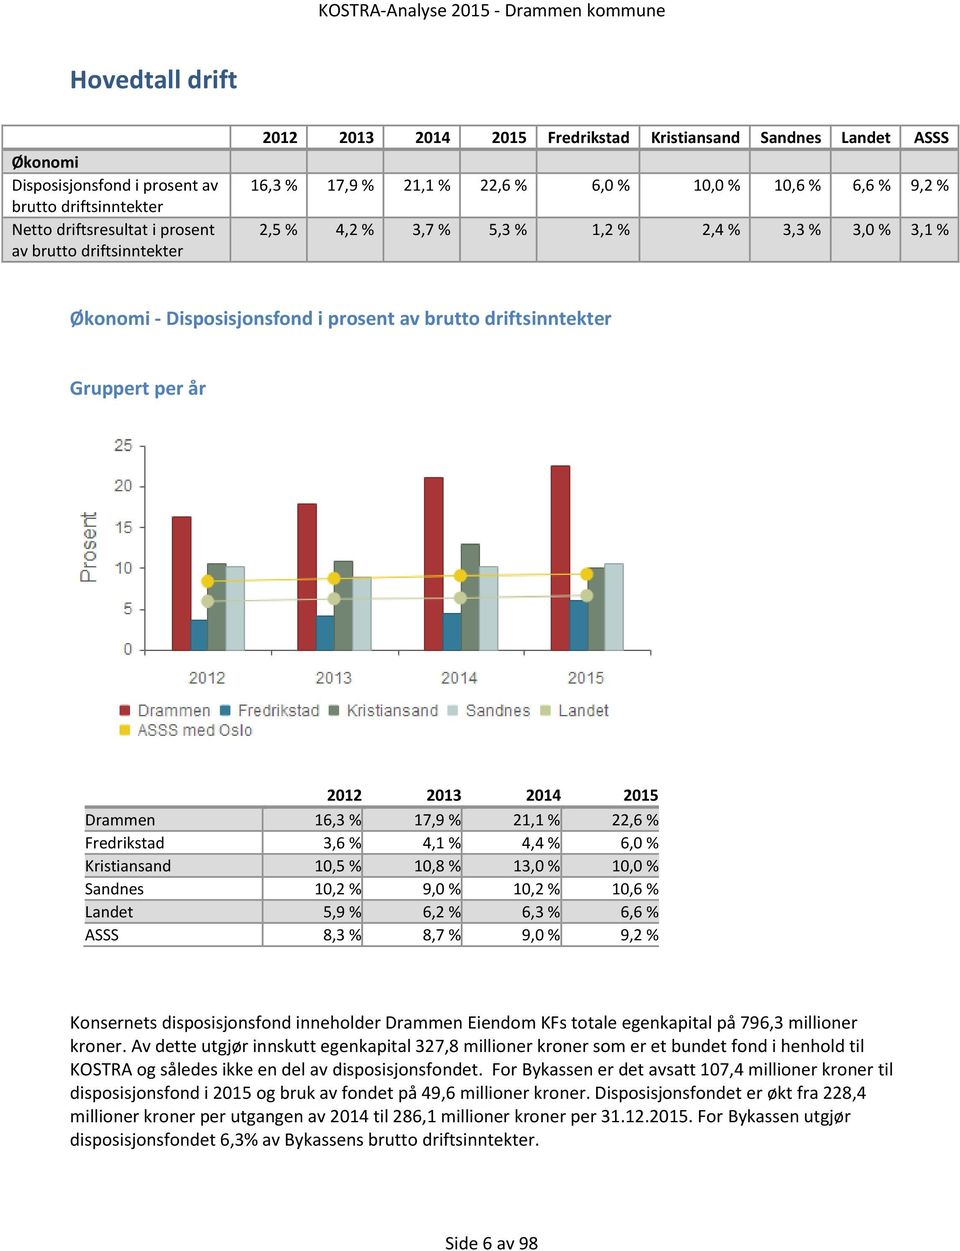 Fredrikstad 3,6 % 4,1 % 4,4 % 6,0 % Kristiansand 10,5 % 10,8 % 13,0 % 10,0 % Sandnes 10,2 % 9,0 % 10,2 % 10,6 % Landet 5,9 % 6,2 % 6,3 % 6,6 % ASSS 8,3 % 8,7 % 9,0 % 9,2 % Konsernets disposisjonsfond